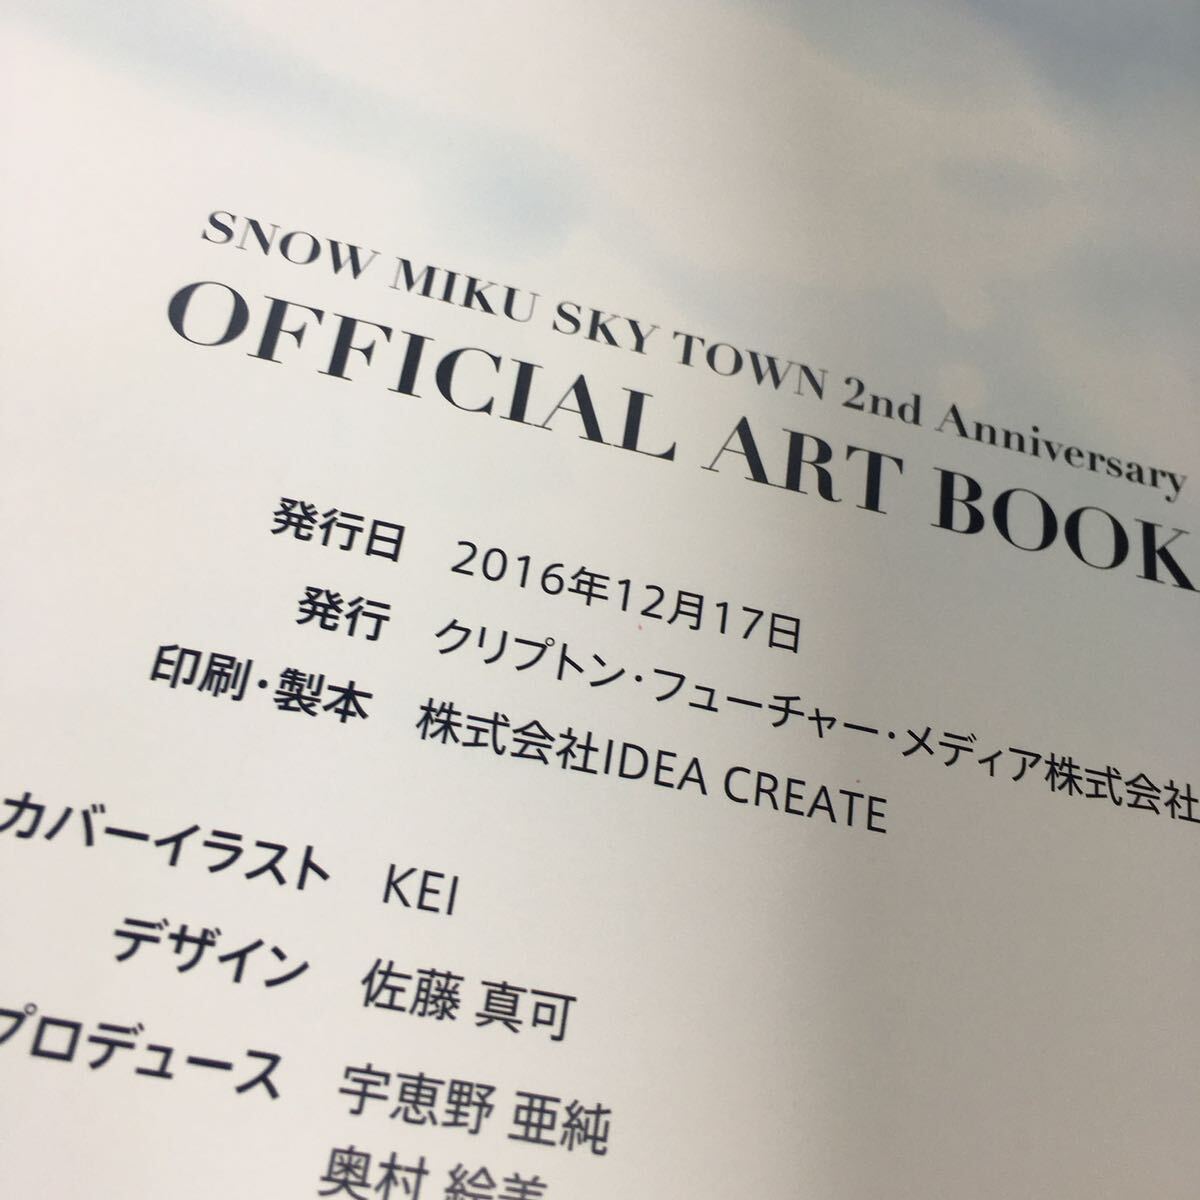 [ 2016年発行 ] 初音ミク SNOW MIKU SKY TOWN 2nd Aniversary OFFICIAL ART BOOK 2016 雪ミク イラスト 本 スカイタウン 2周年 限定